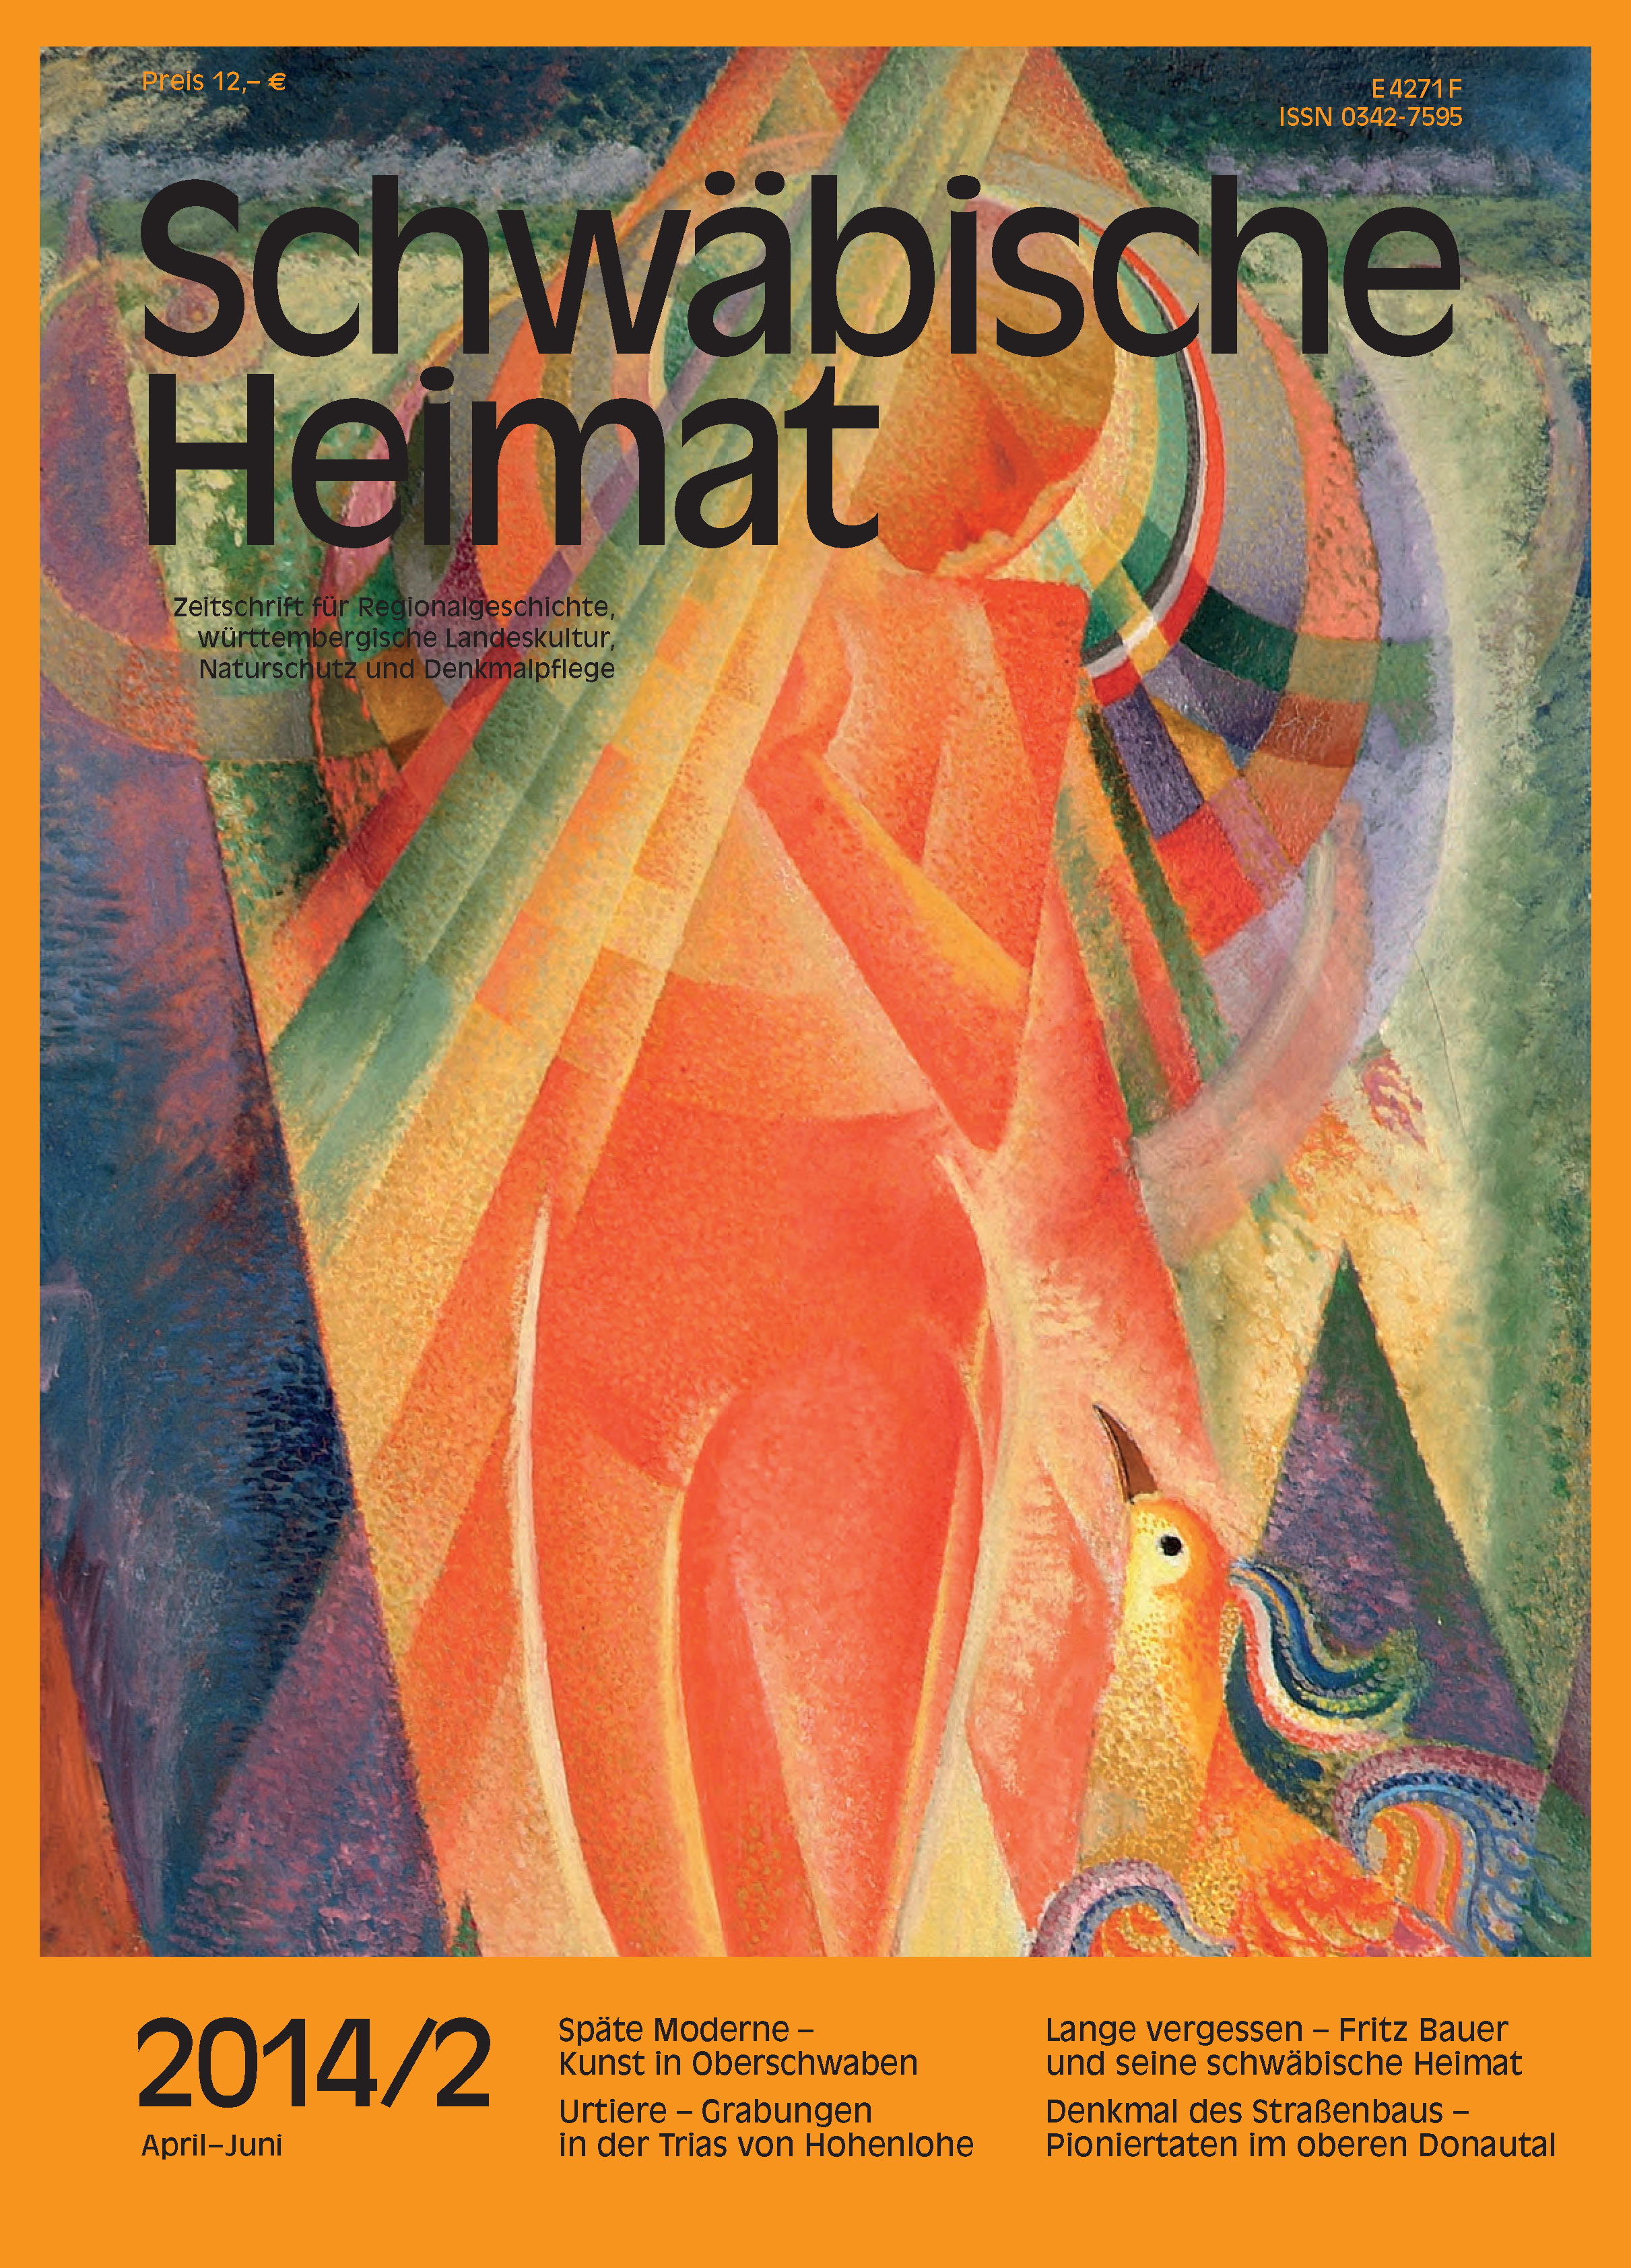                     Ansehen Bd. 65 Nr. 2 (2014): Schwäbische Heimat
                